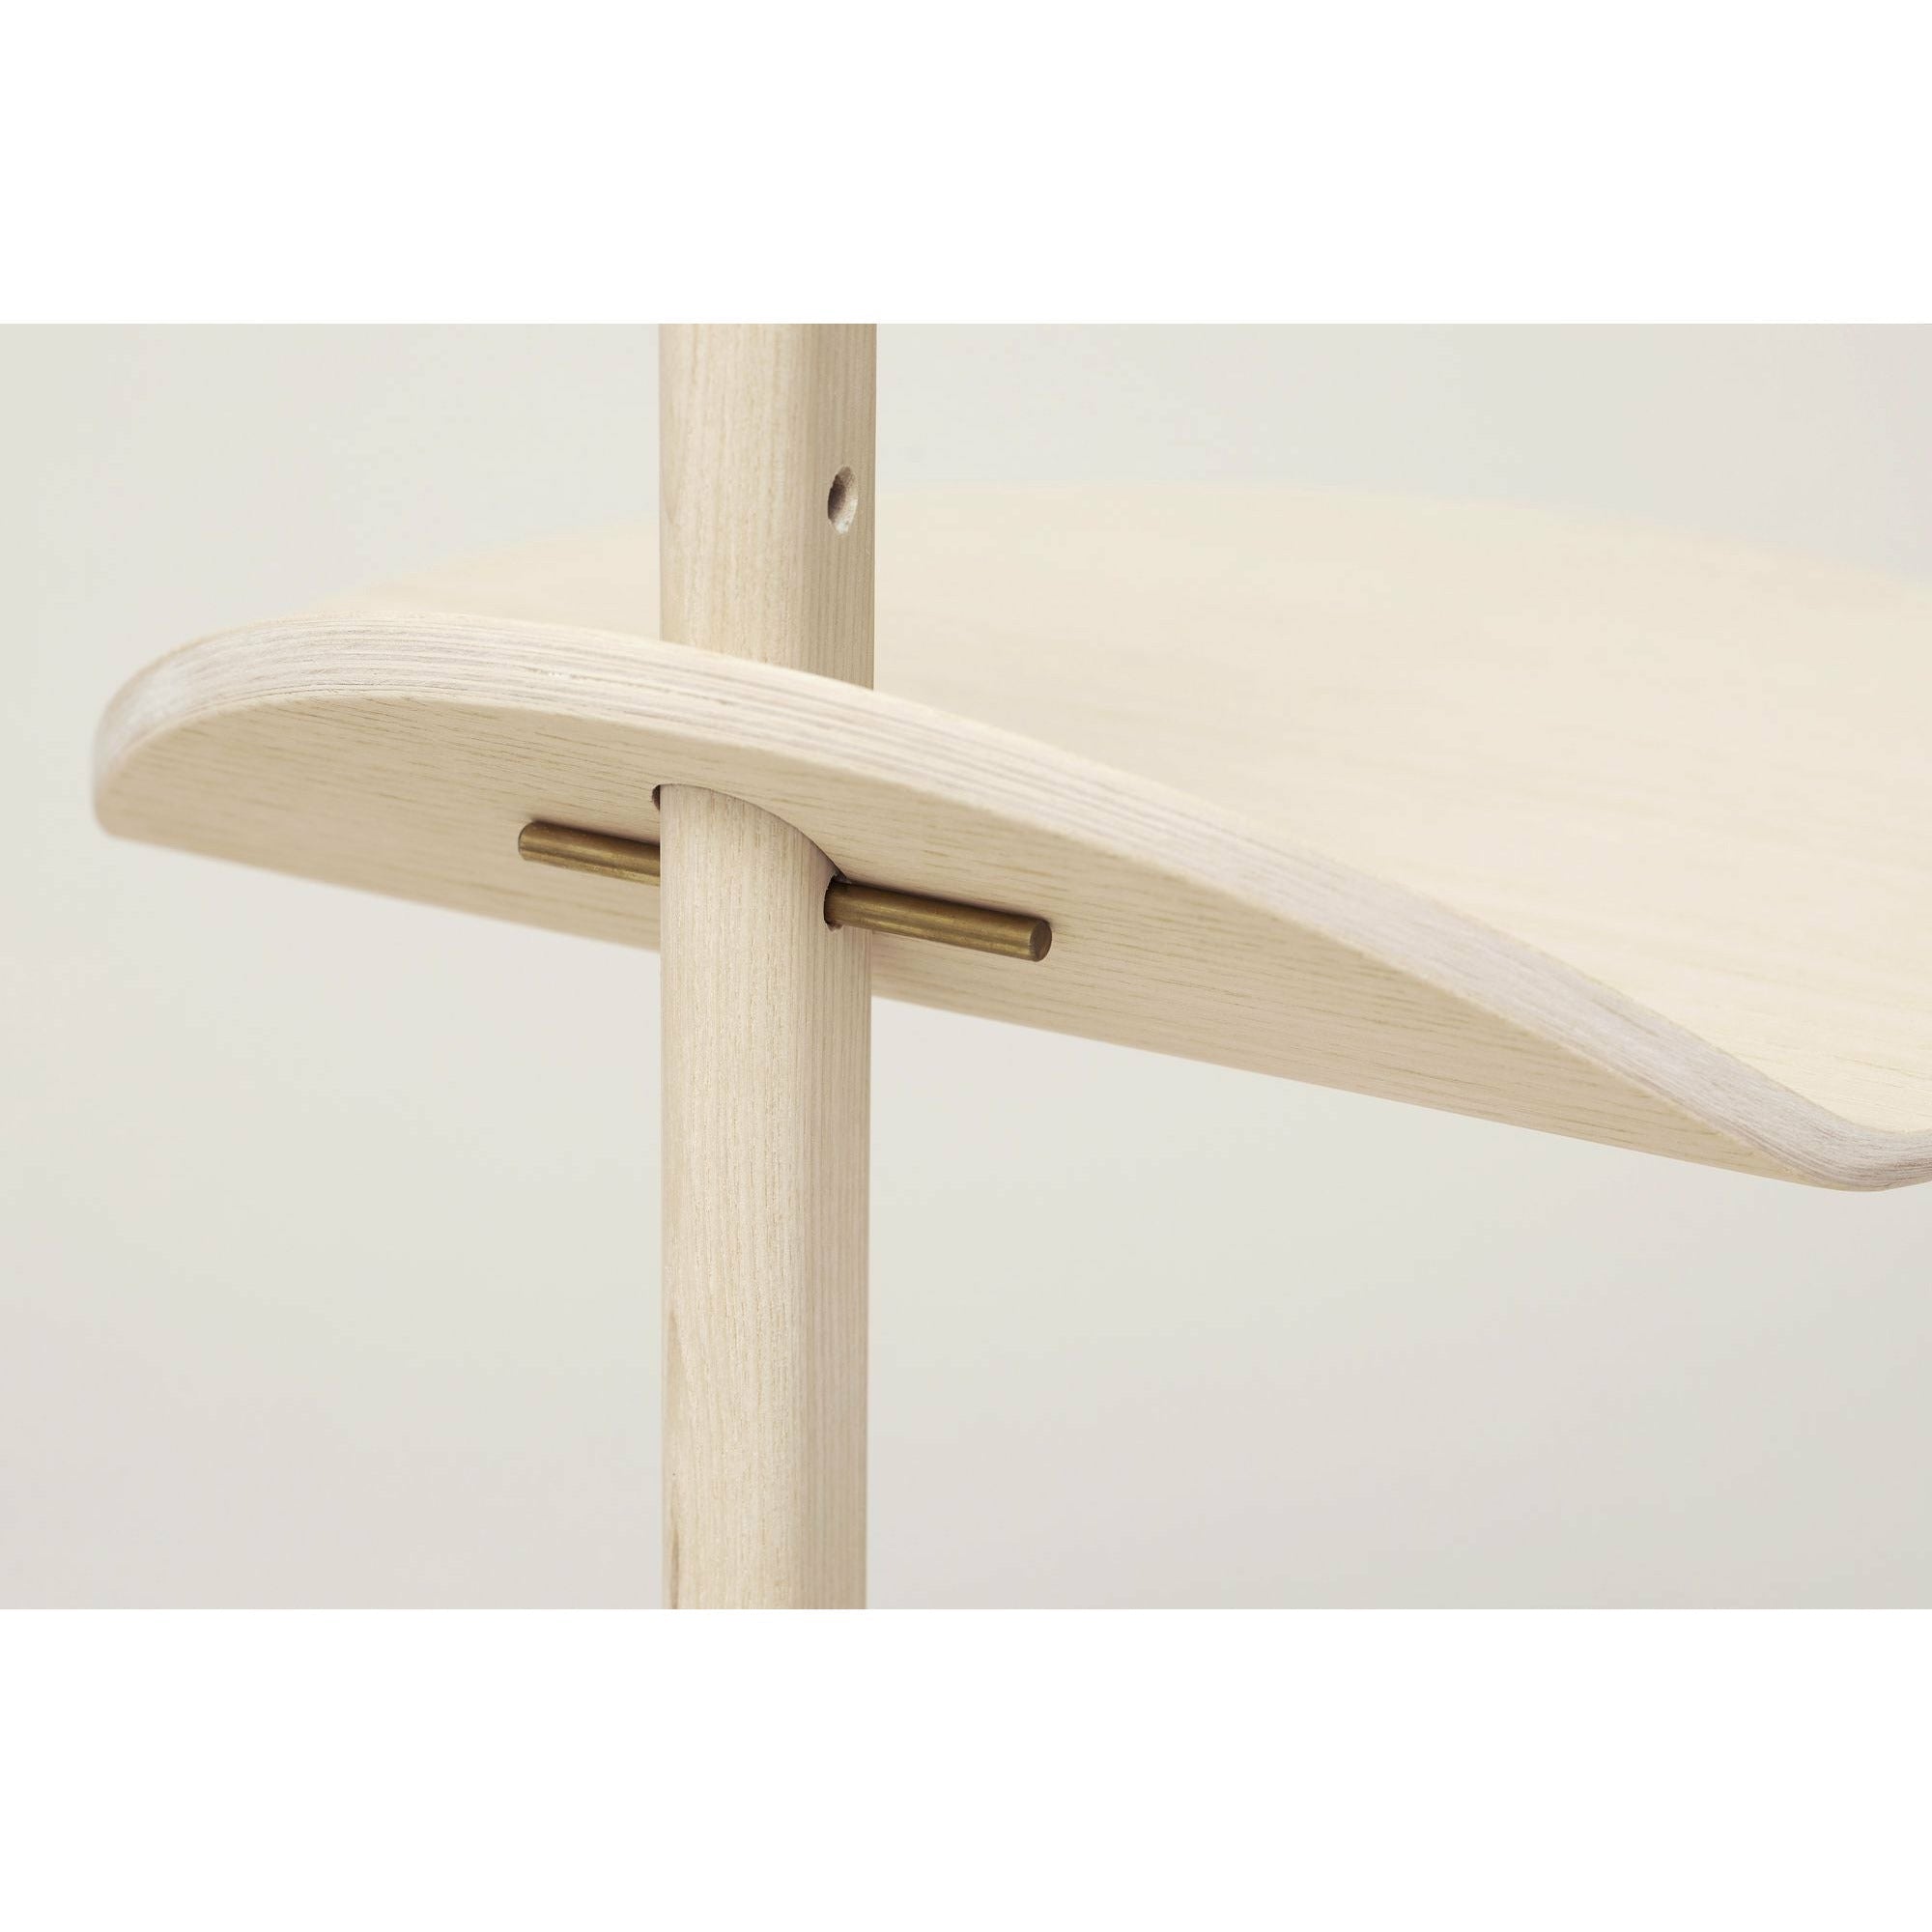 Form & Refine Stilk Boczny stół. Popiół